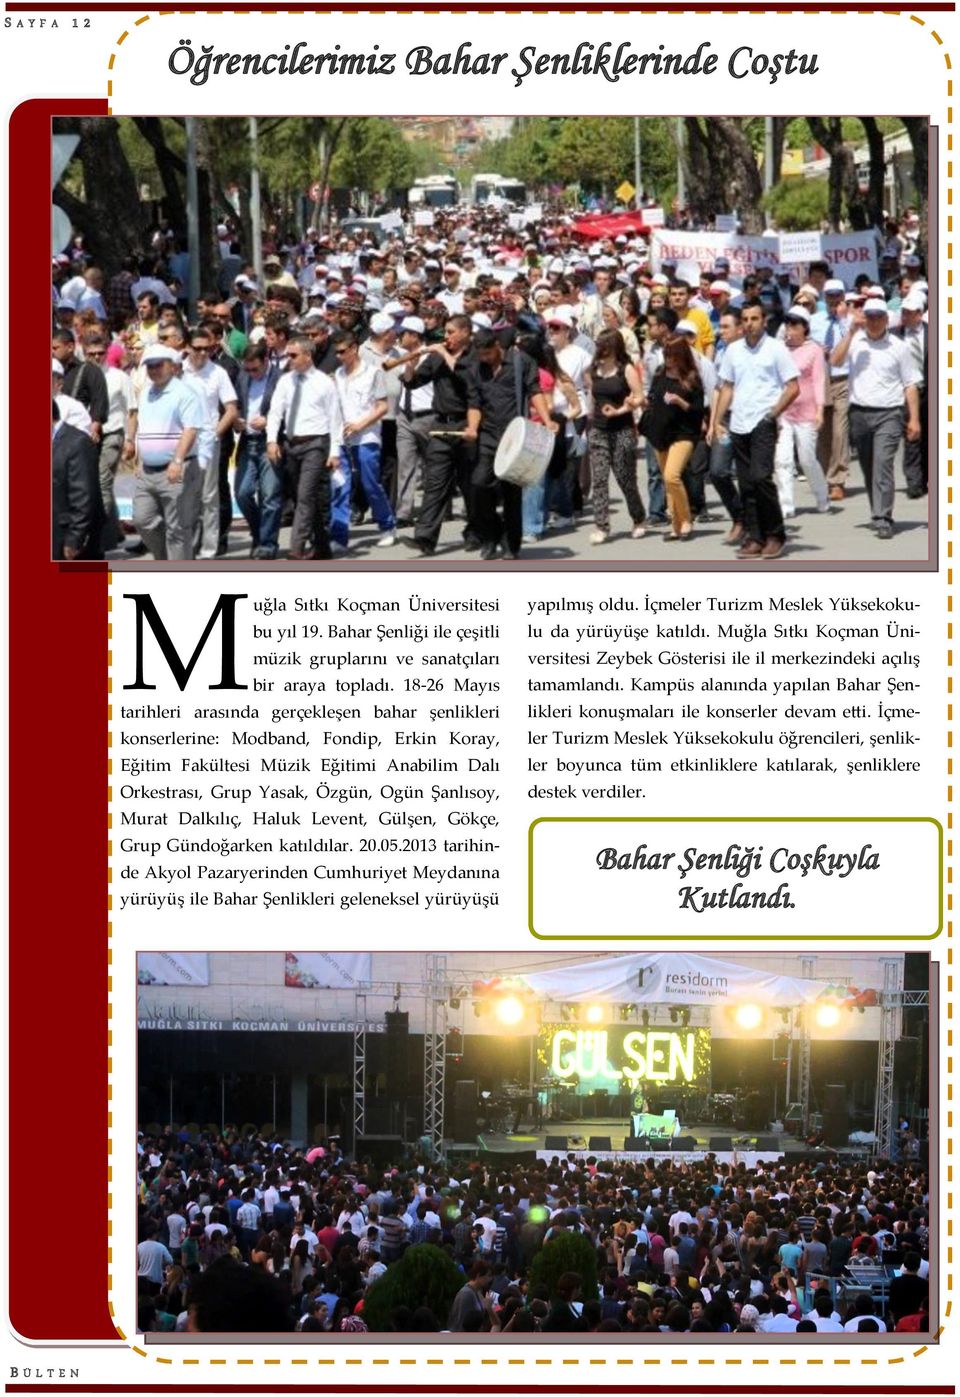 Murat Dalkılıç, Haluk Levent, Gülşen, Gökçe, Grup Gündoğarken katıldılar. 20.05.2013 tarihinde Akyol Pazaryerinden Cumhuriyet Meydanına yürüyüş ile Bahar Şenlikleri geleneksel yürüyüşü yapılmış oldu.